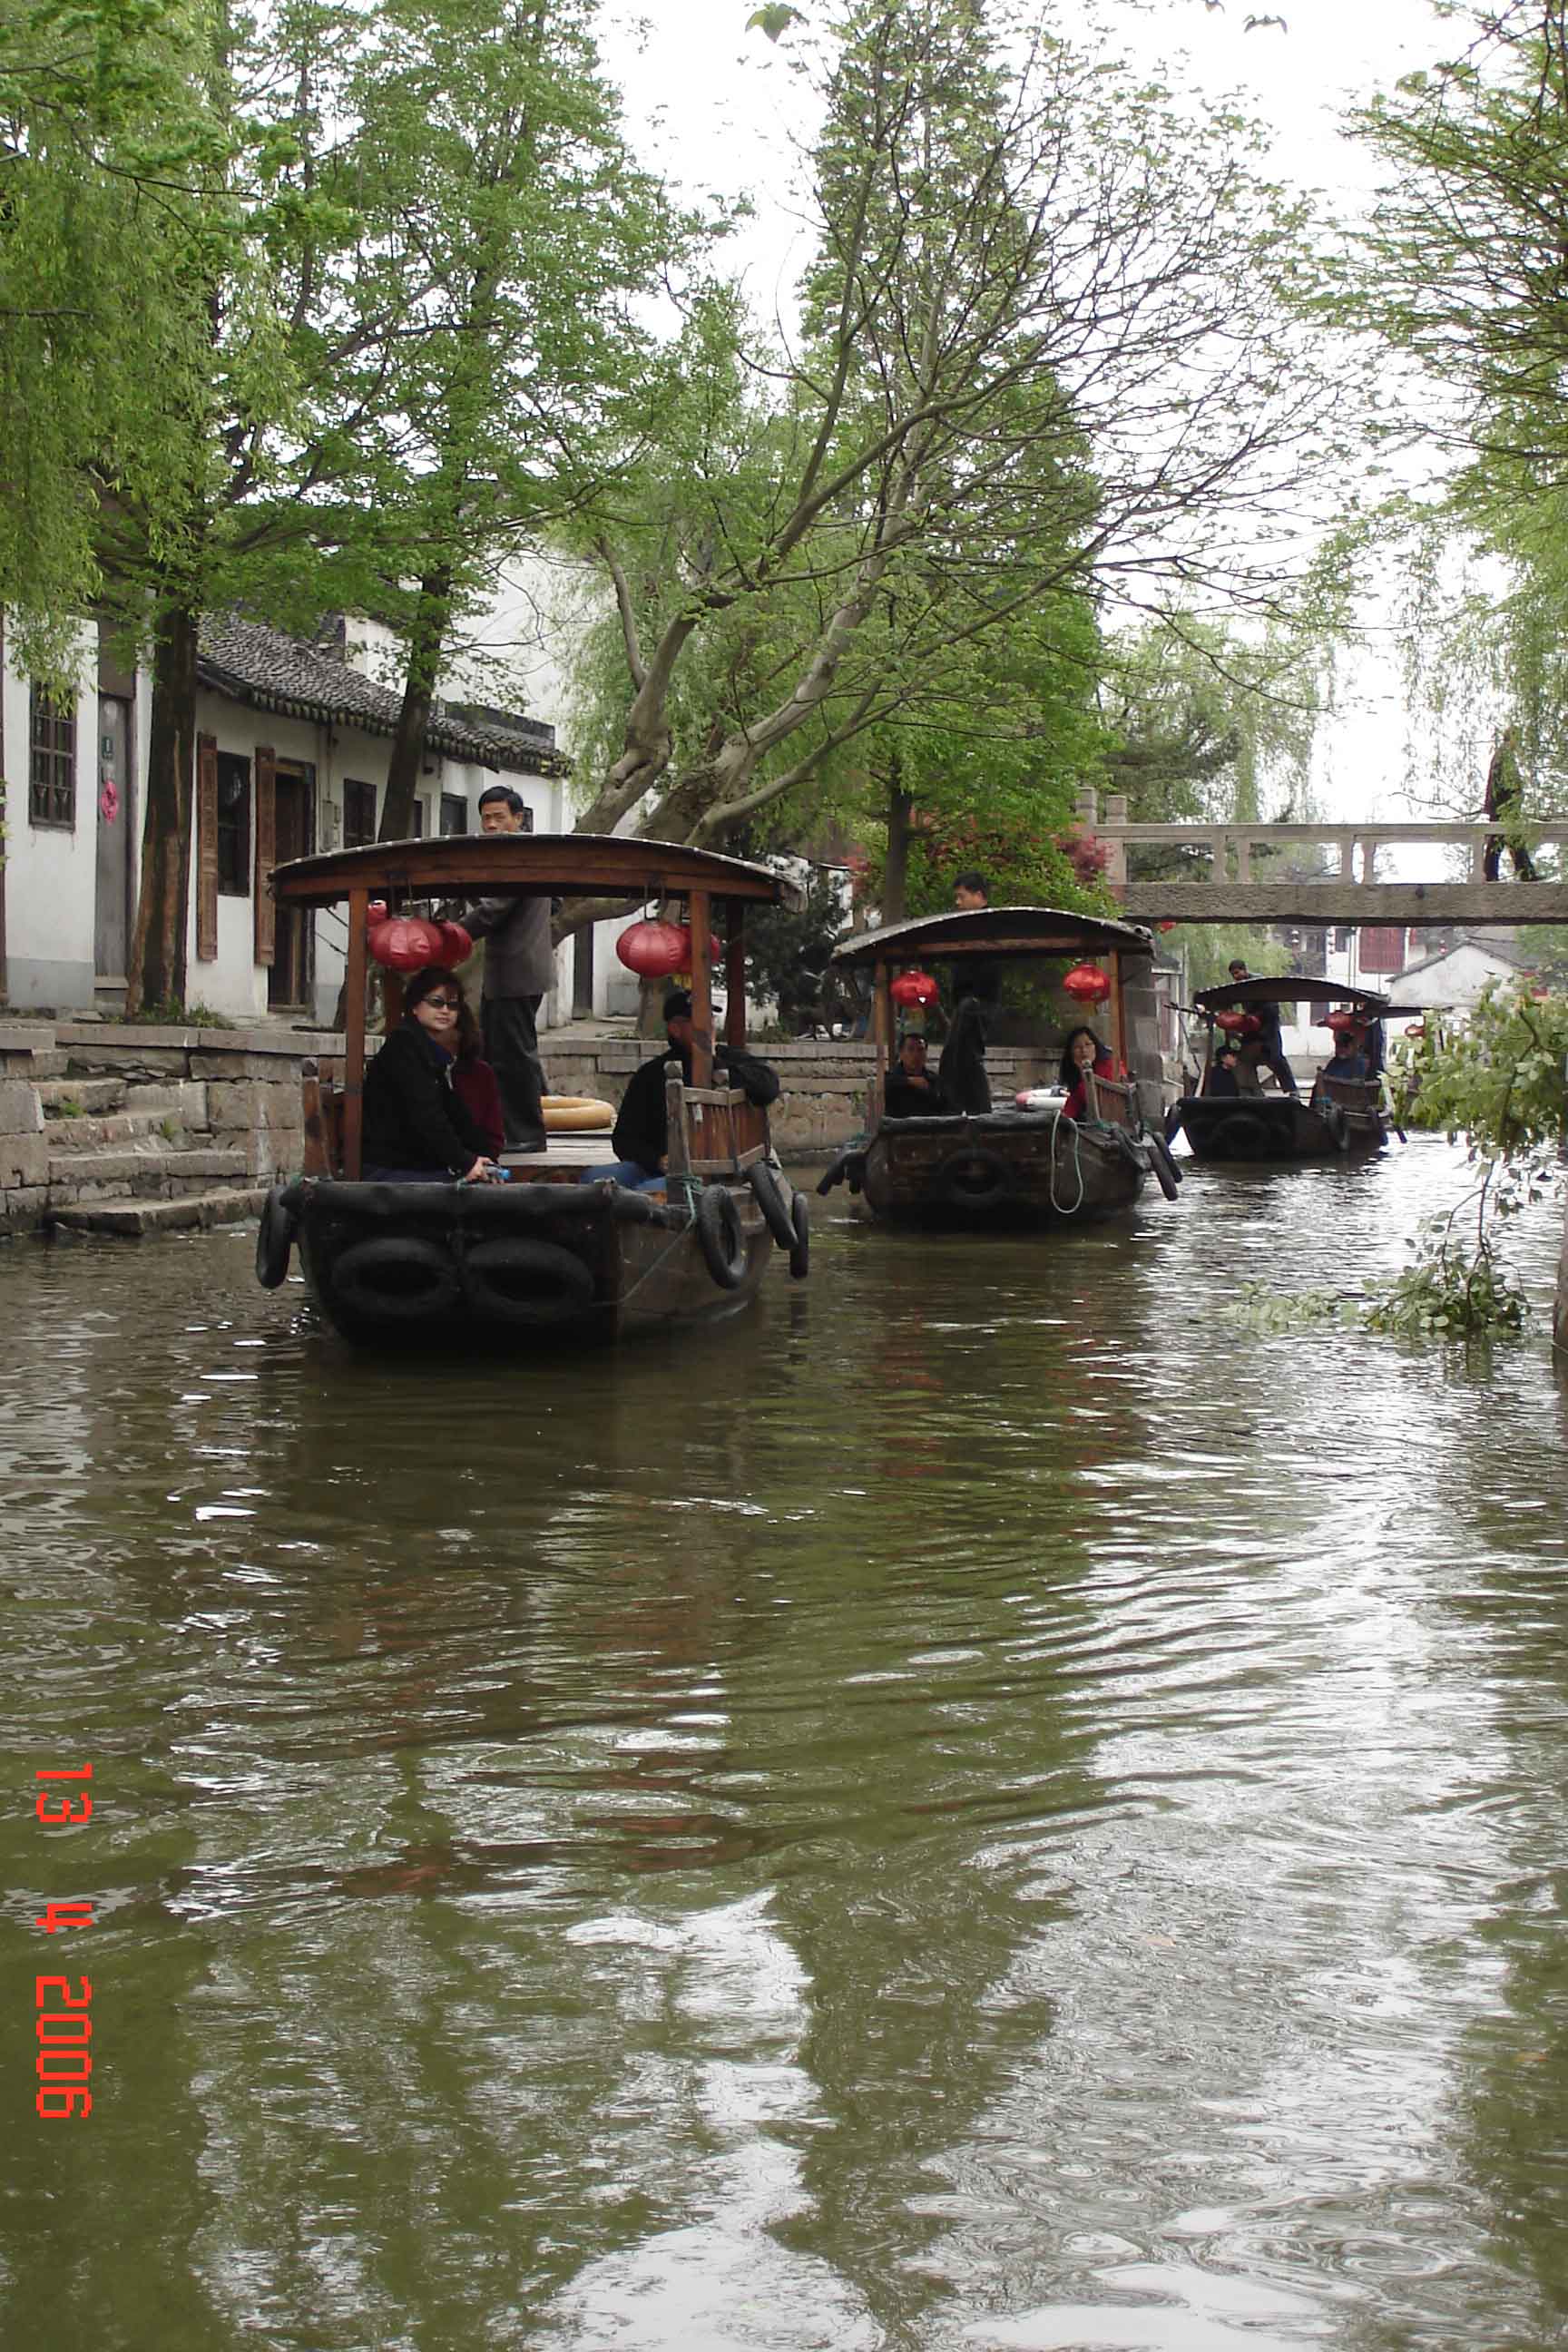 Tourists enjoy a canal boat ride through the ancient water town Zhujiajiao